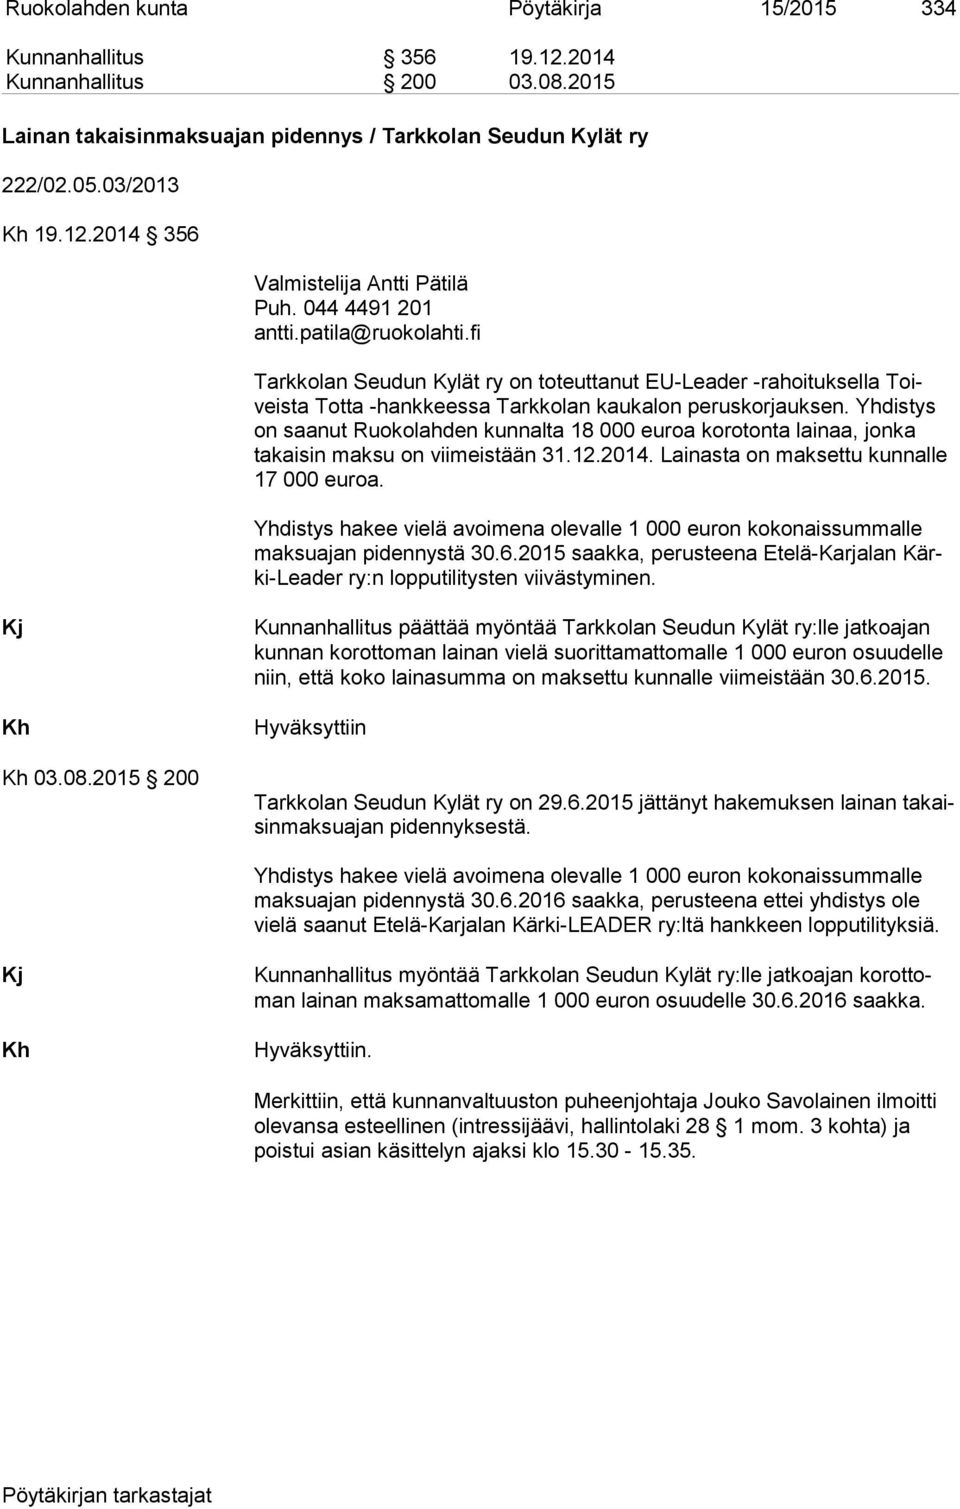 Yhdistys on saanut Ruokolahden kunnalta 18 000 euroa korotonta lainaa, jonka takaisin mak su on viimeistään 31.12.2014. Lainasta on maksettu kunnalle 17 000 euroa.